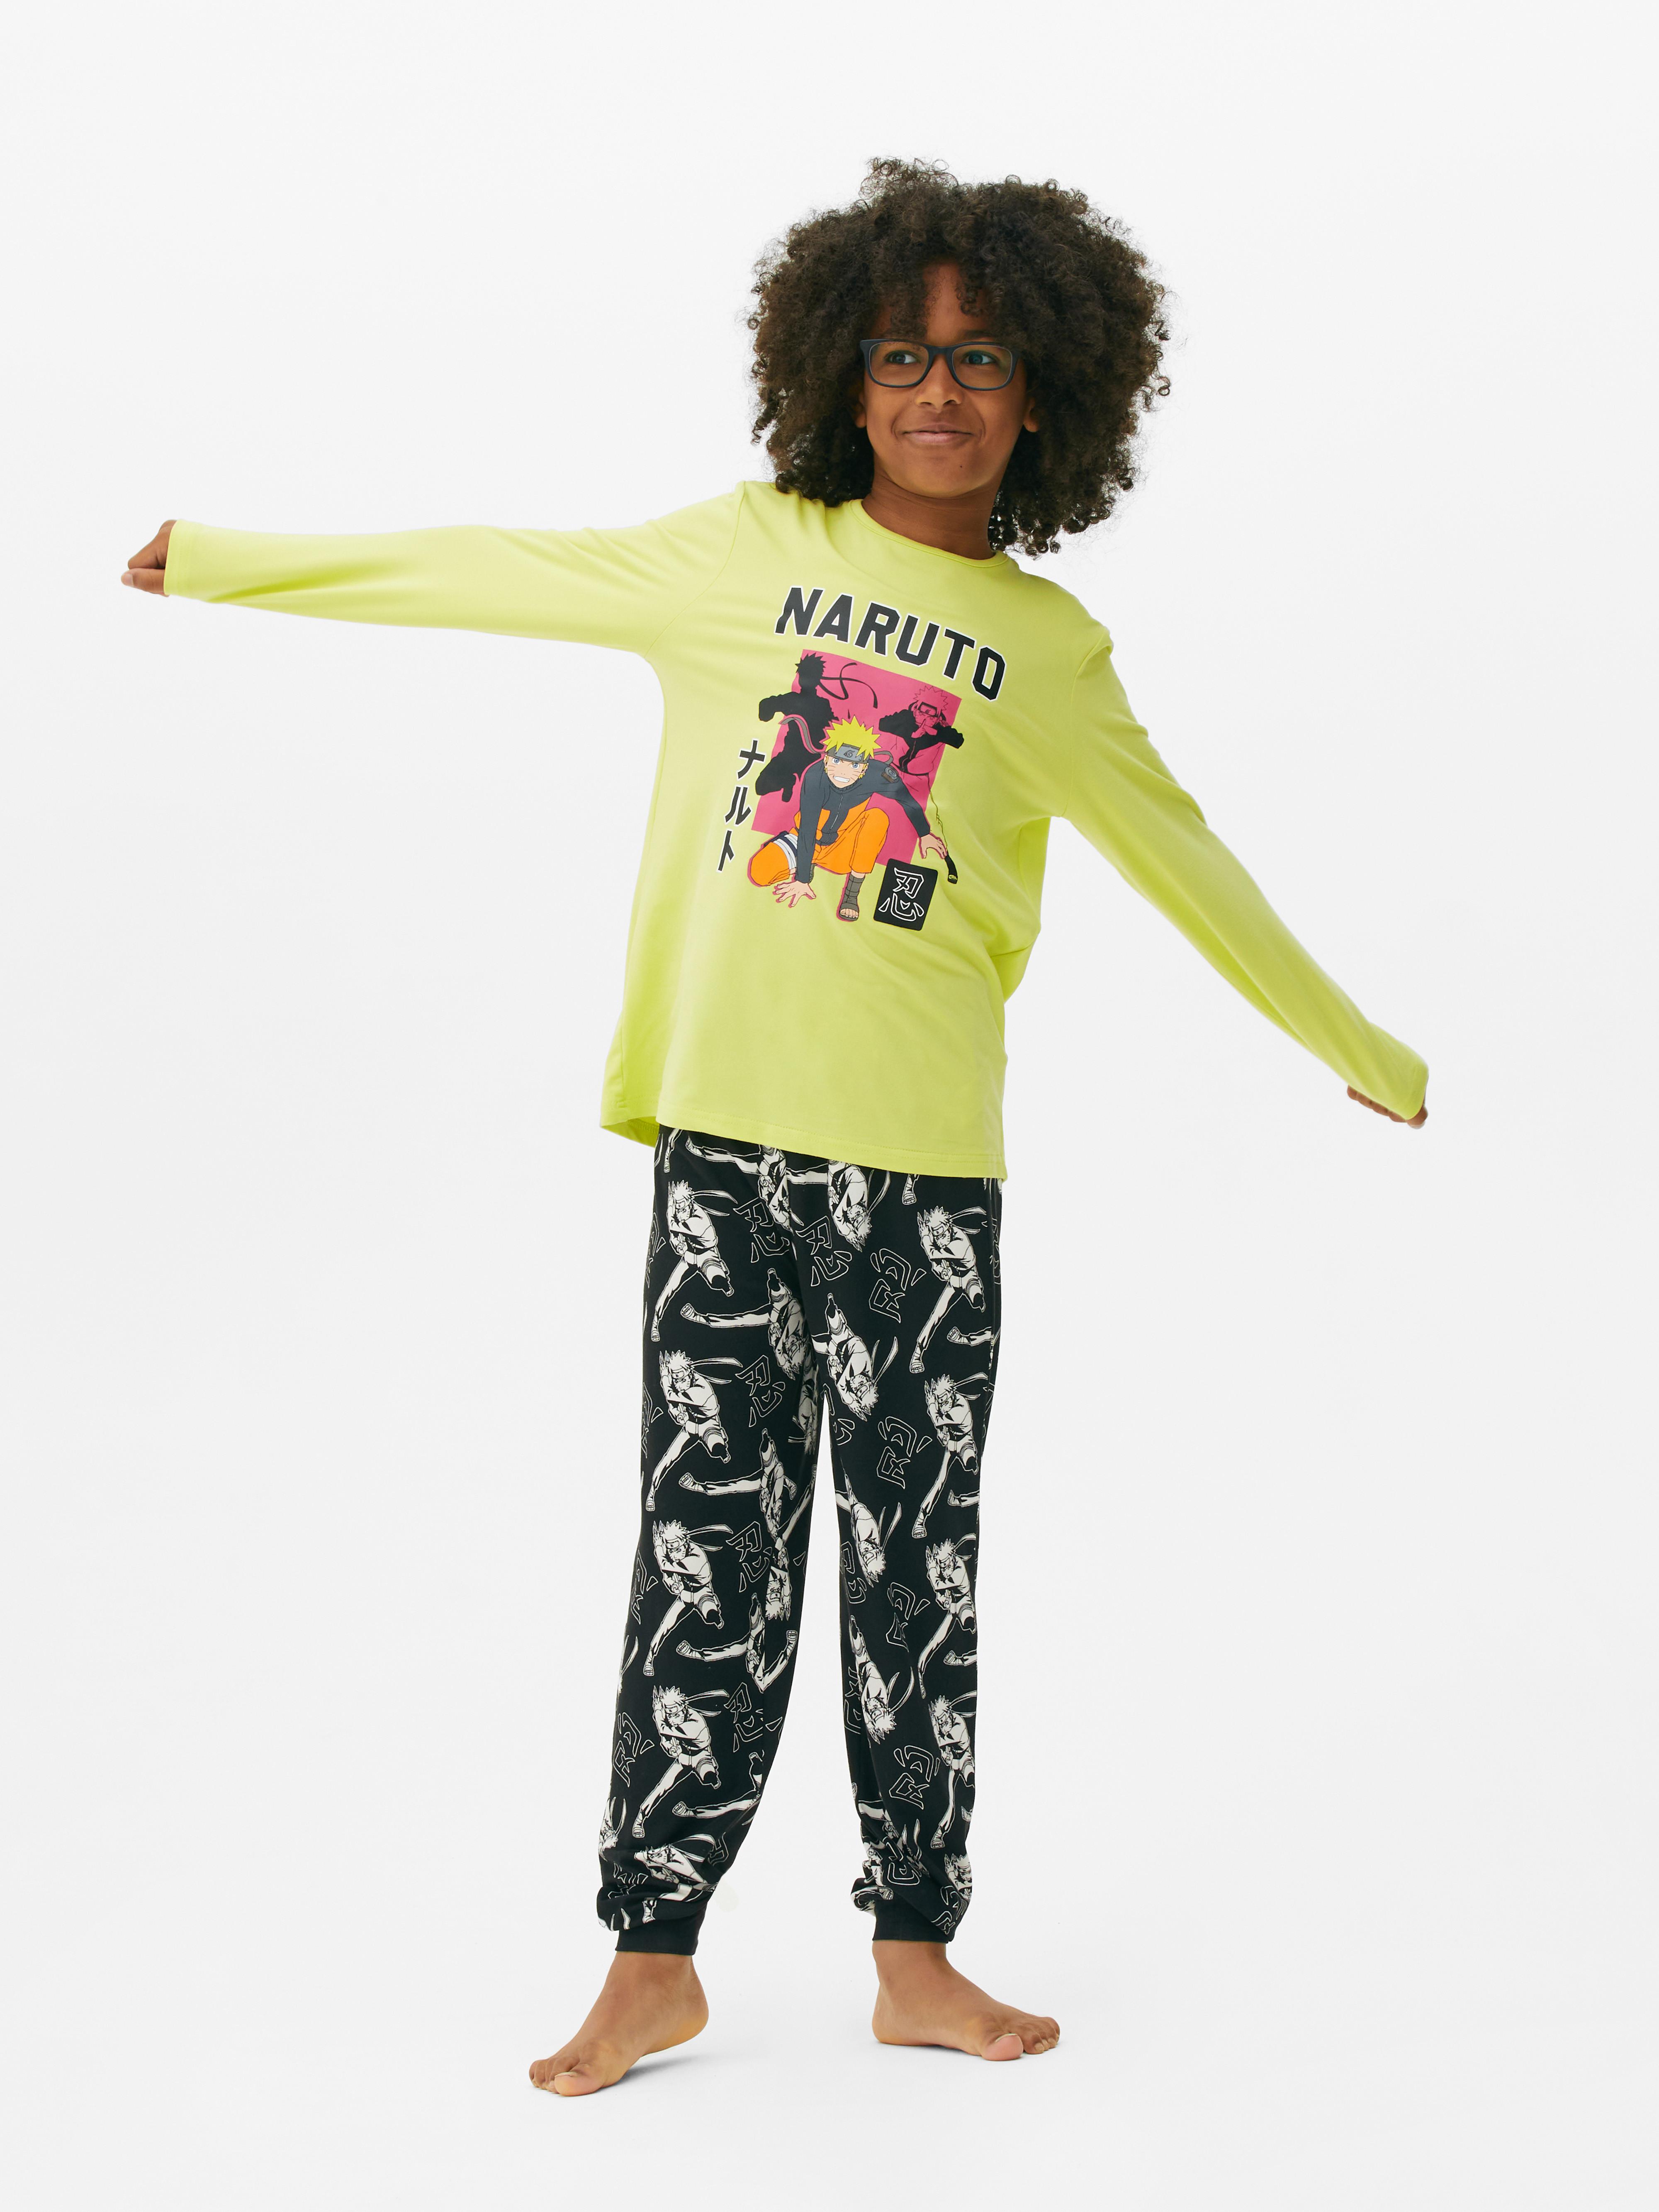 Naruto Graphic Pyjamas